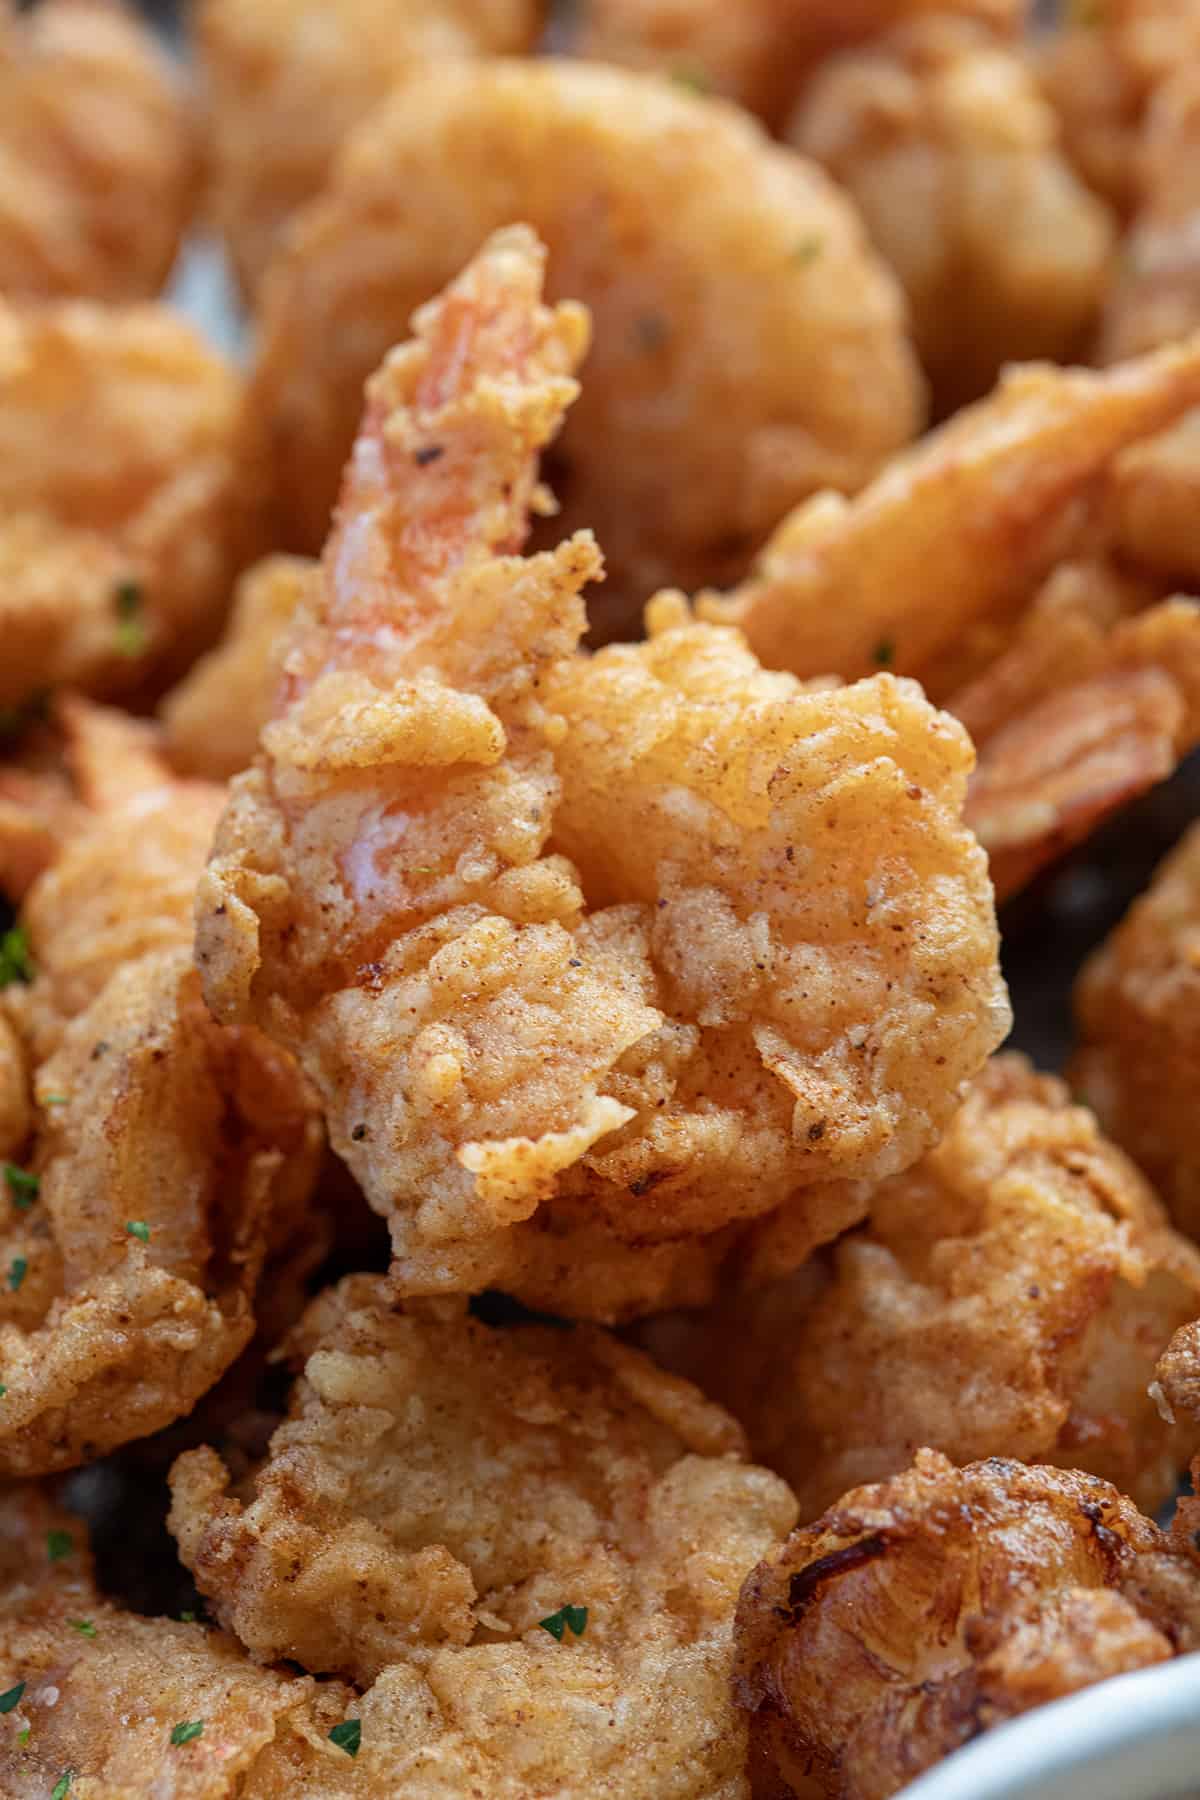 Close up of a piece of Fried Shrimp.